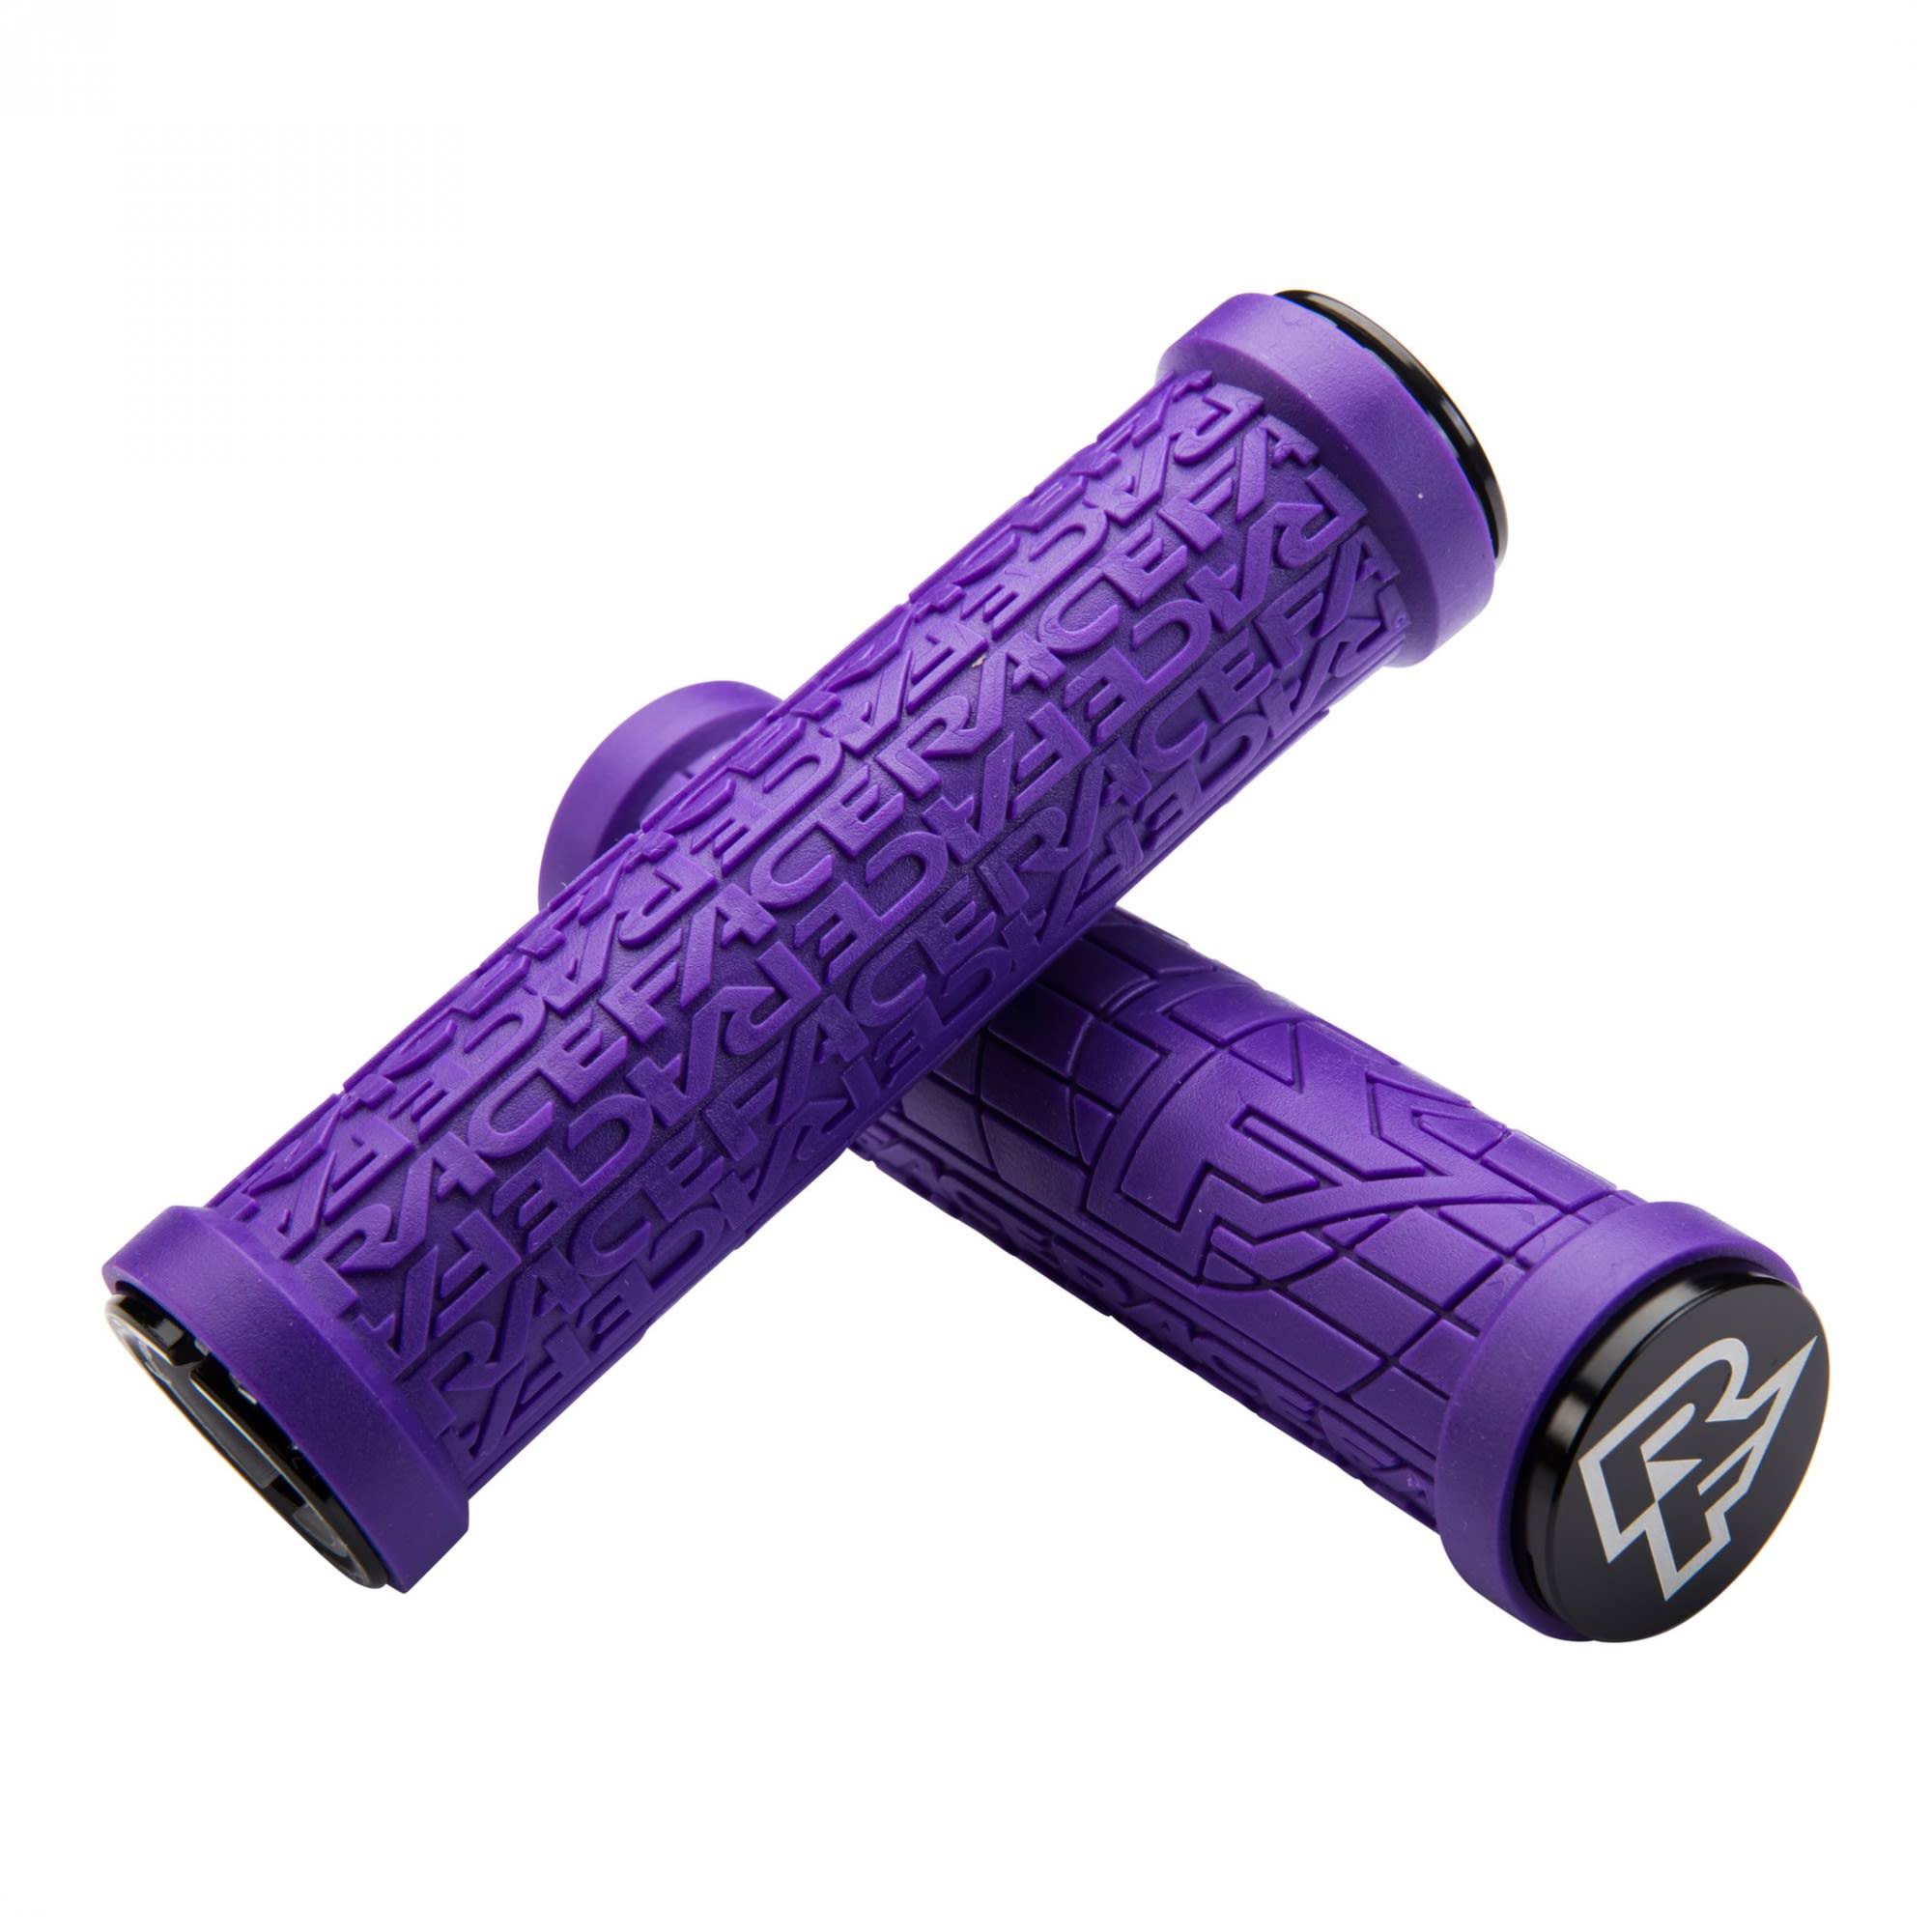 Race Face Grippler Lock On Grips - Purple, 30mm